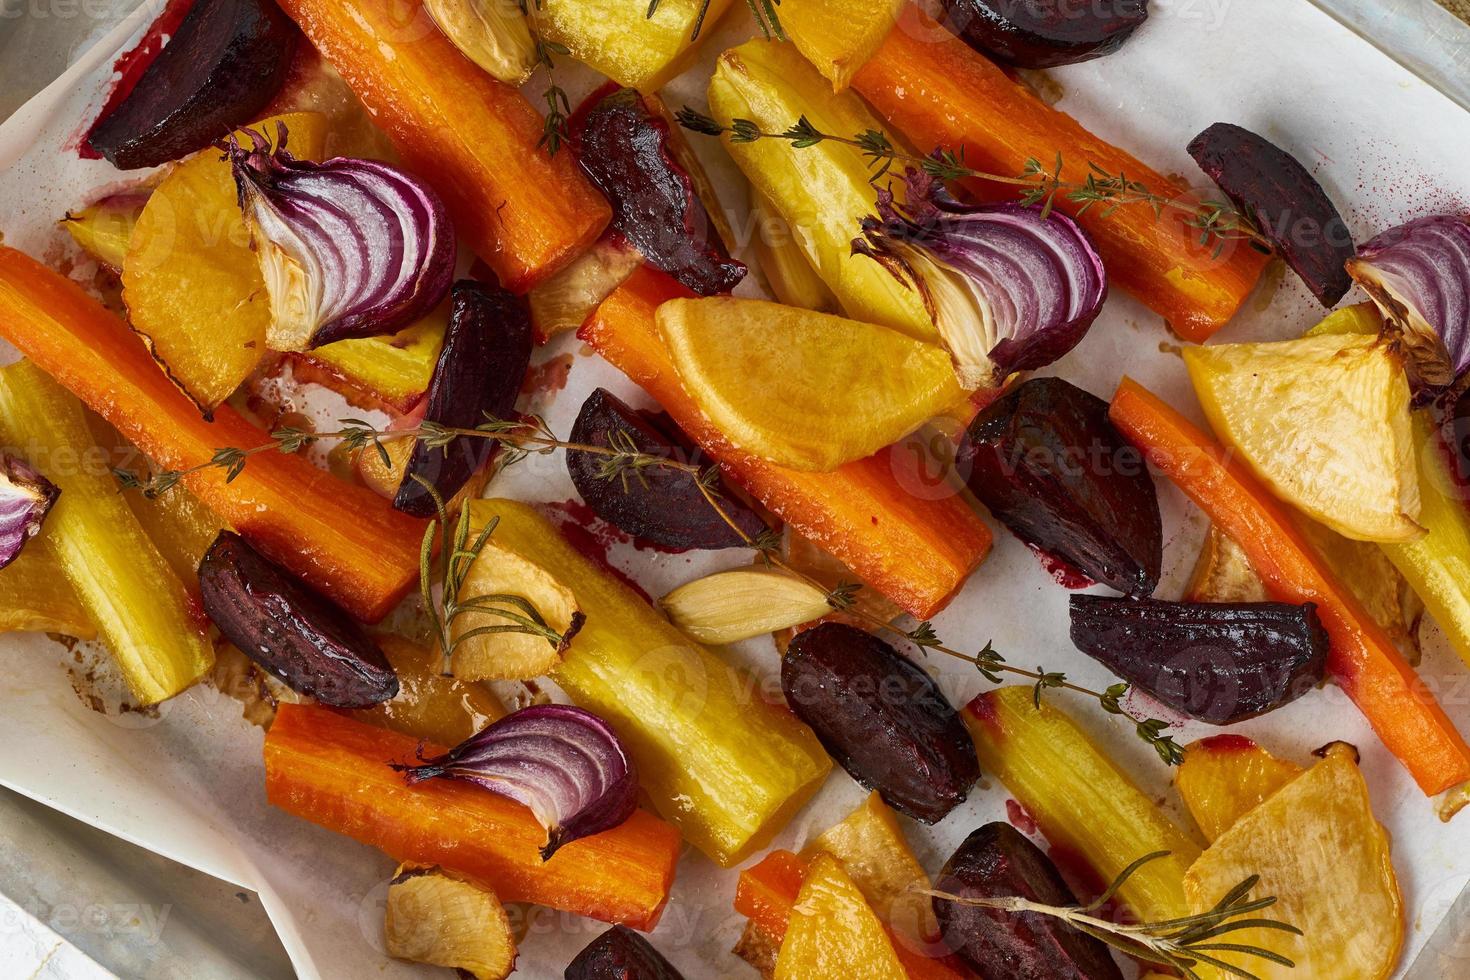 kleurrijke geroosterde groenten op dienblad met perkament. mix van wortelen, bieten, rapen foto